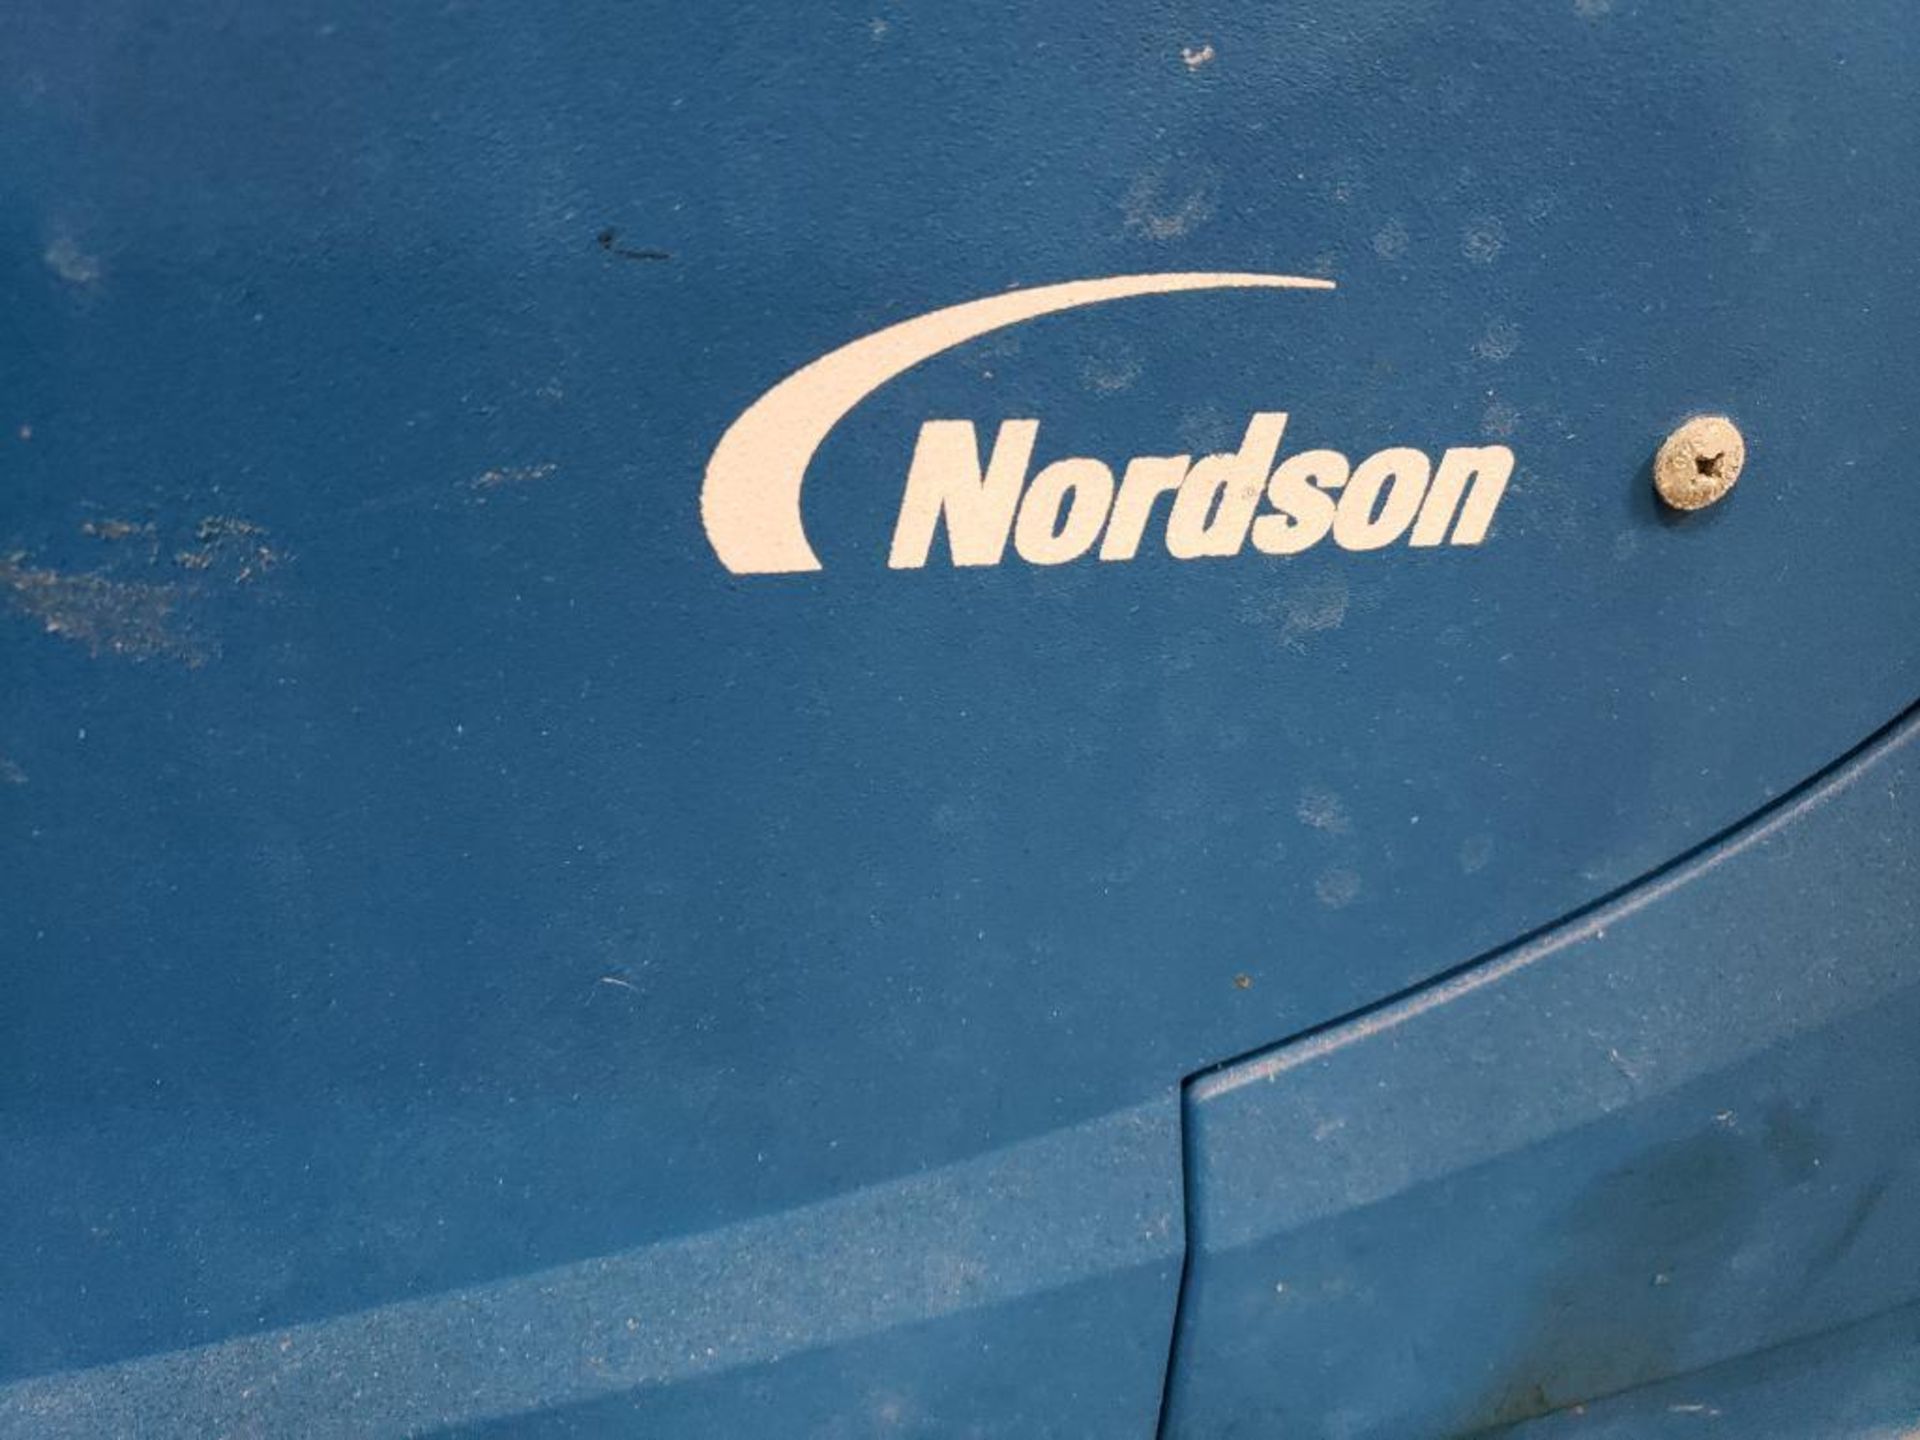 Nordson hot melt glue machine. Model Pro Blue Liberty 14. - Image 4 of 10